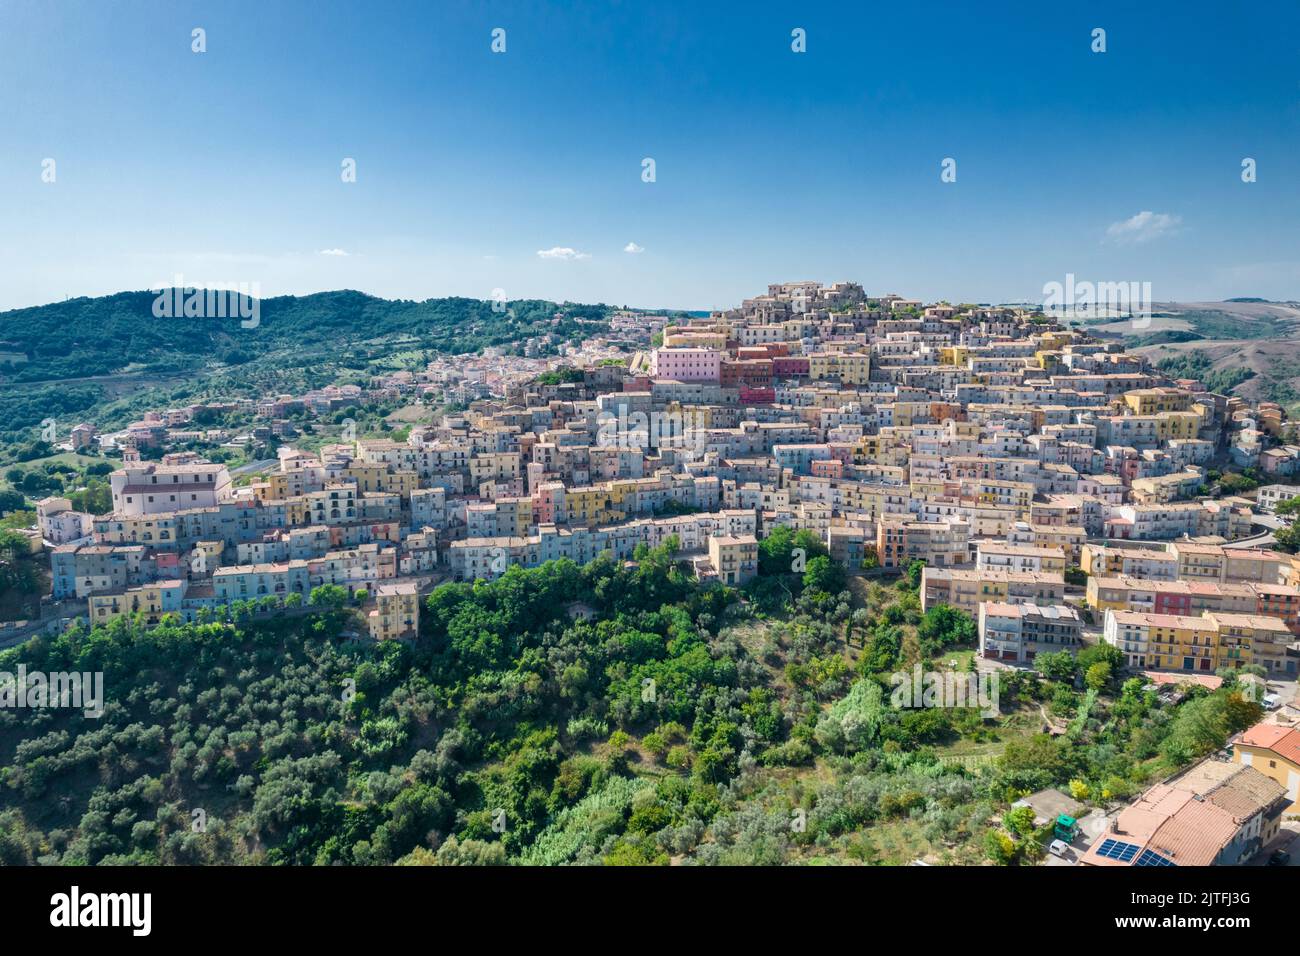 Vue aérienne de la petite ville ancienne de Calitri, près d'avellino, campanie, italie Banque D'Images